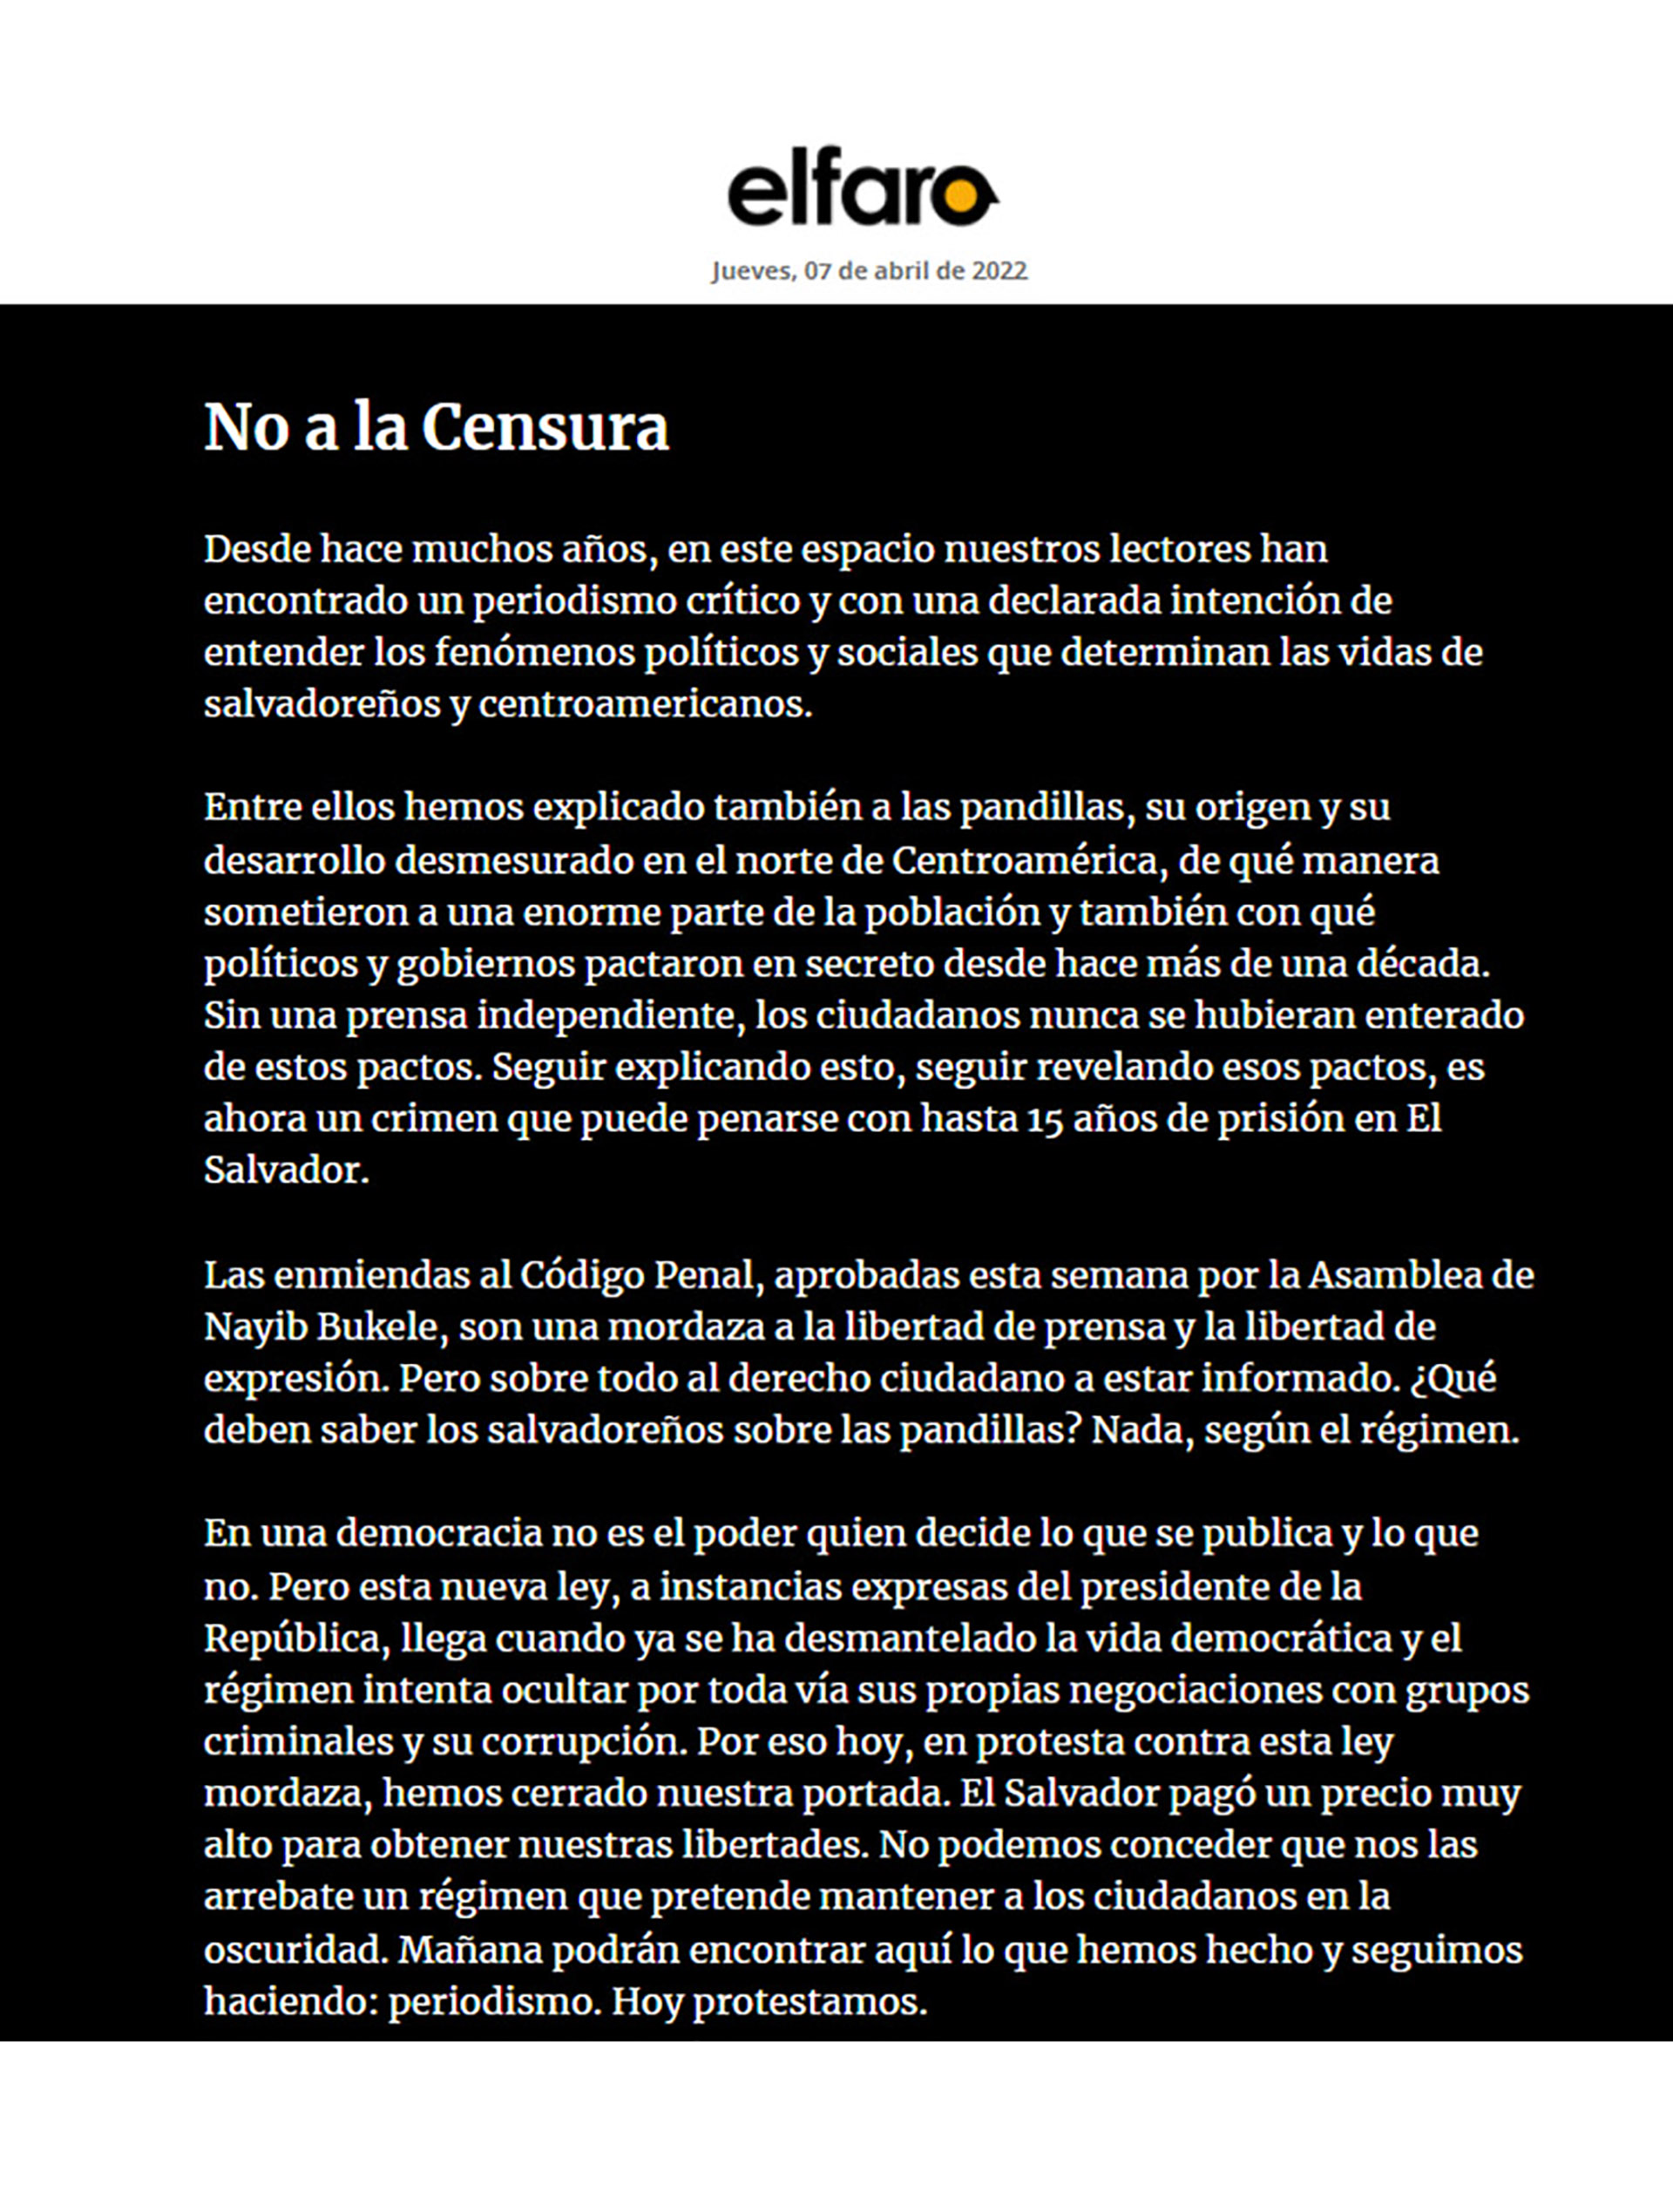 El texto publicado en la web de El Faro, que reemplazó las noticias por una protesta contra la censura del presidente Nayib Bukele